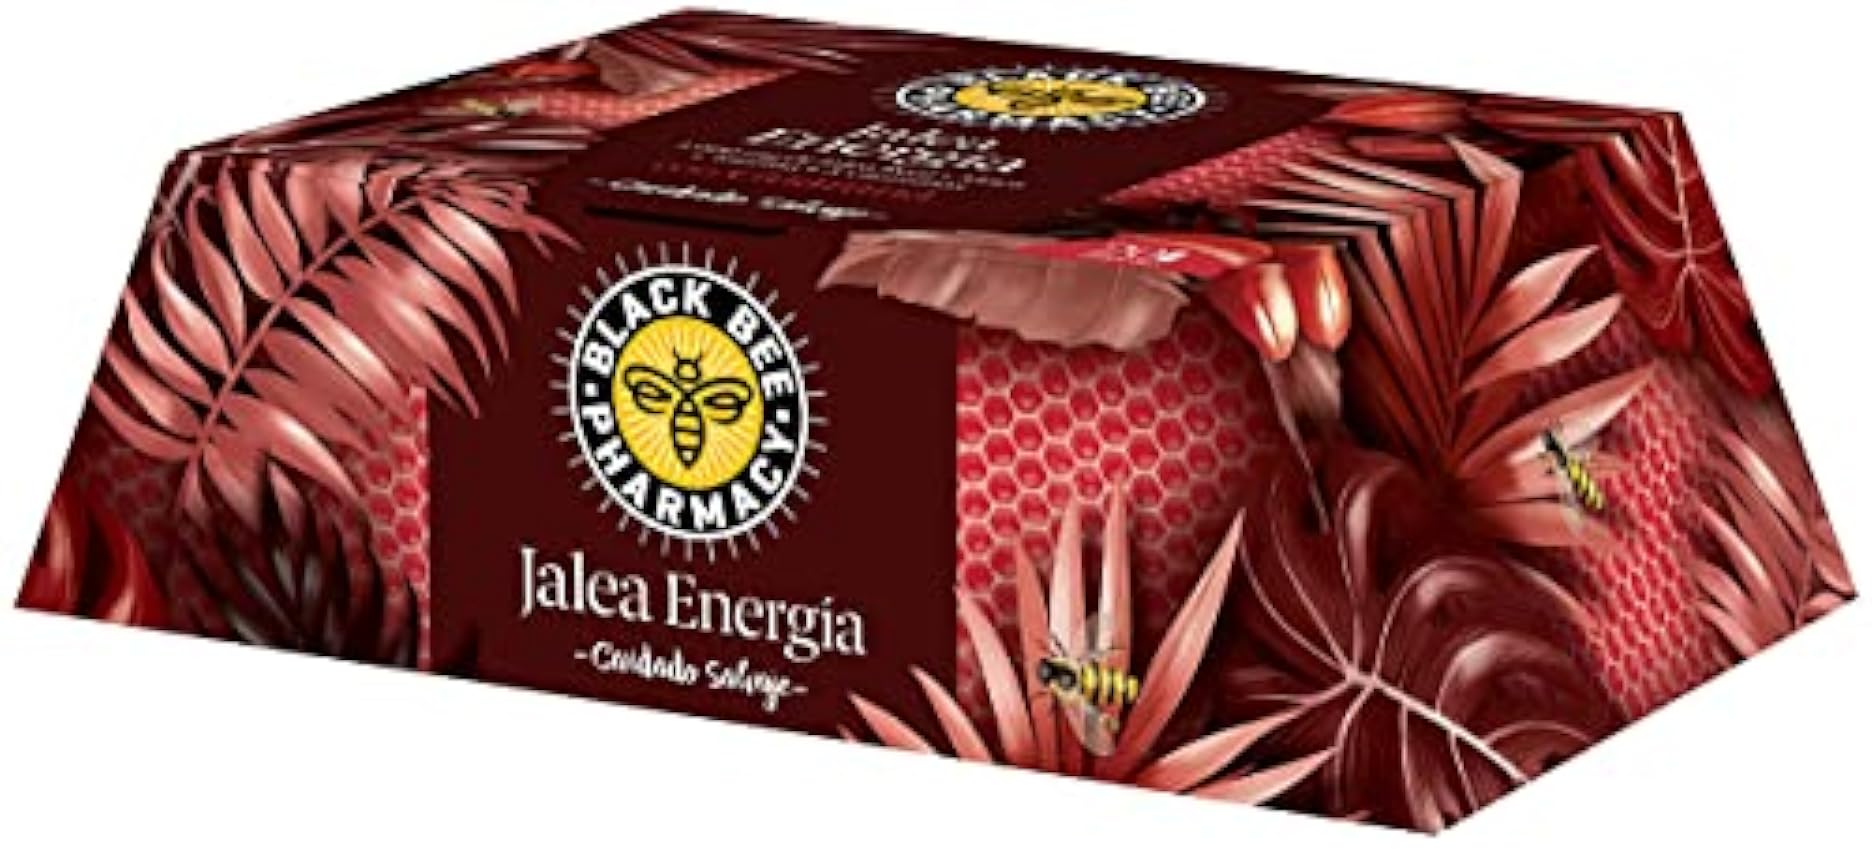 Black Bee Jalea Real Energía, Complemento Alimenticio con Maca, Guaraná, Taurina y 5 Vitaminas - 20 Ampollas IbMFY3WY